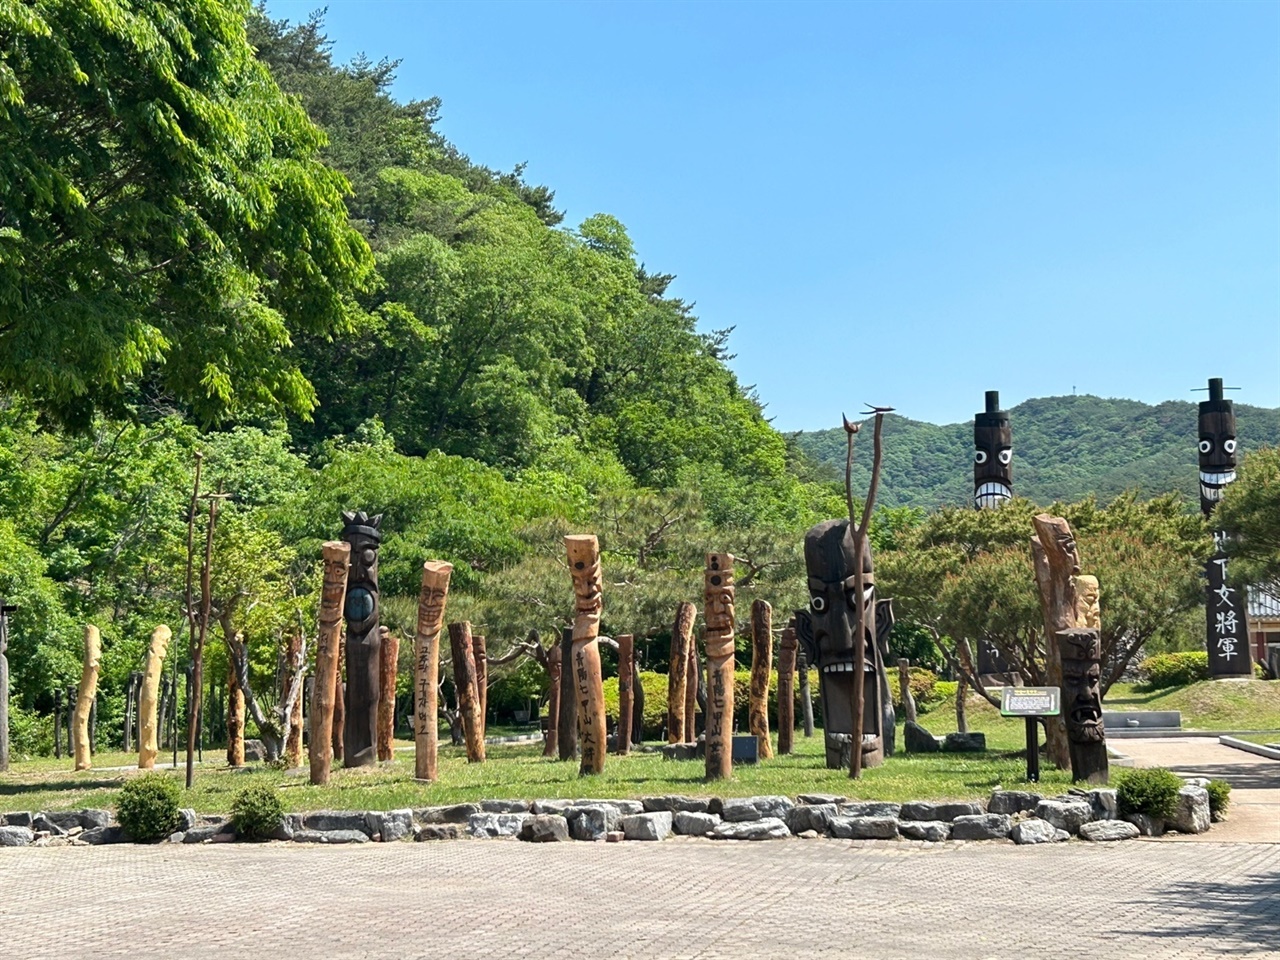 장승공원에서 칠갑산 정기를 품은 350여 개의 다양한 장승을 만나 볼 수 있다. 